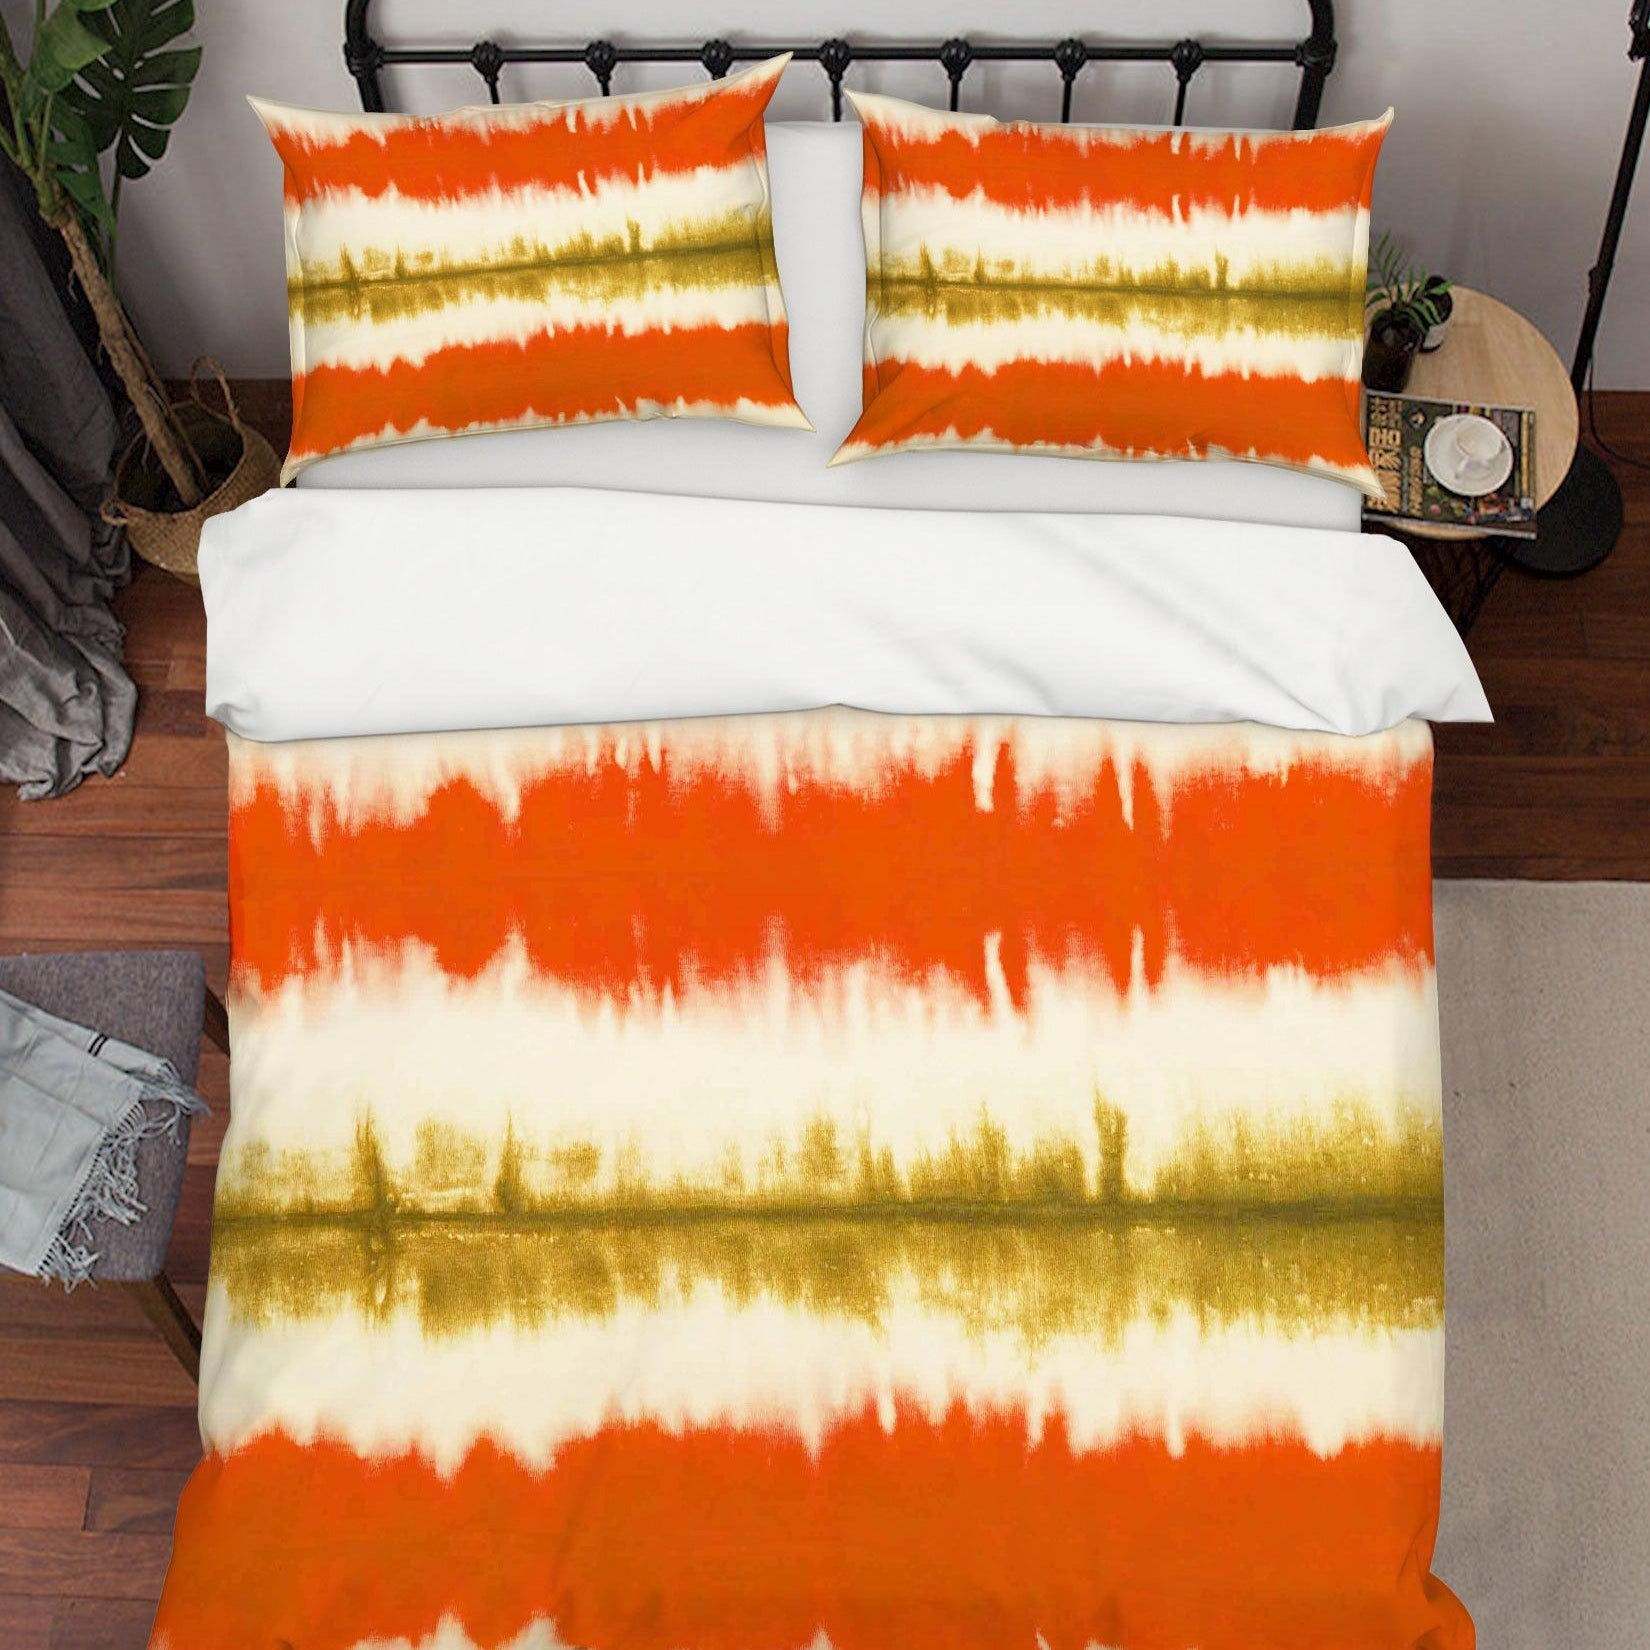 3D Yellow Watercolor Stripes Quilt Cover Set Bedding Set Pillowcases 18- Jess Art Decoration